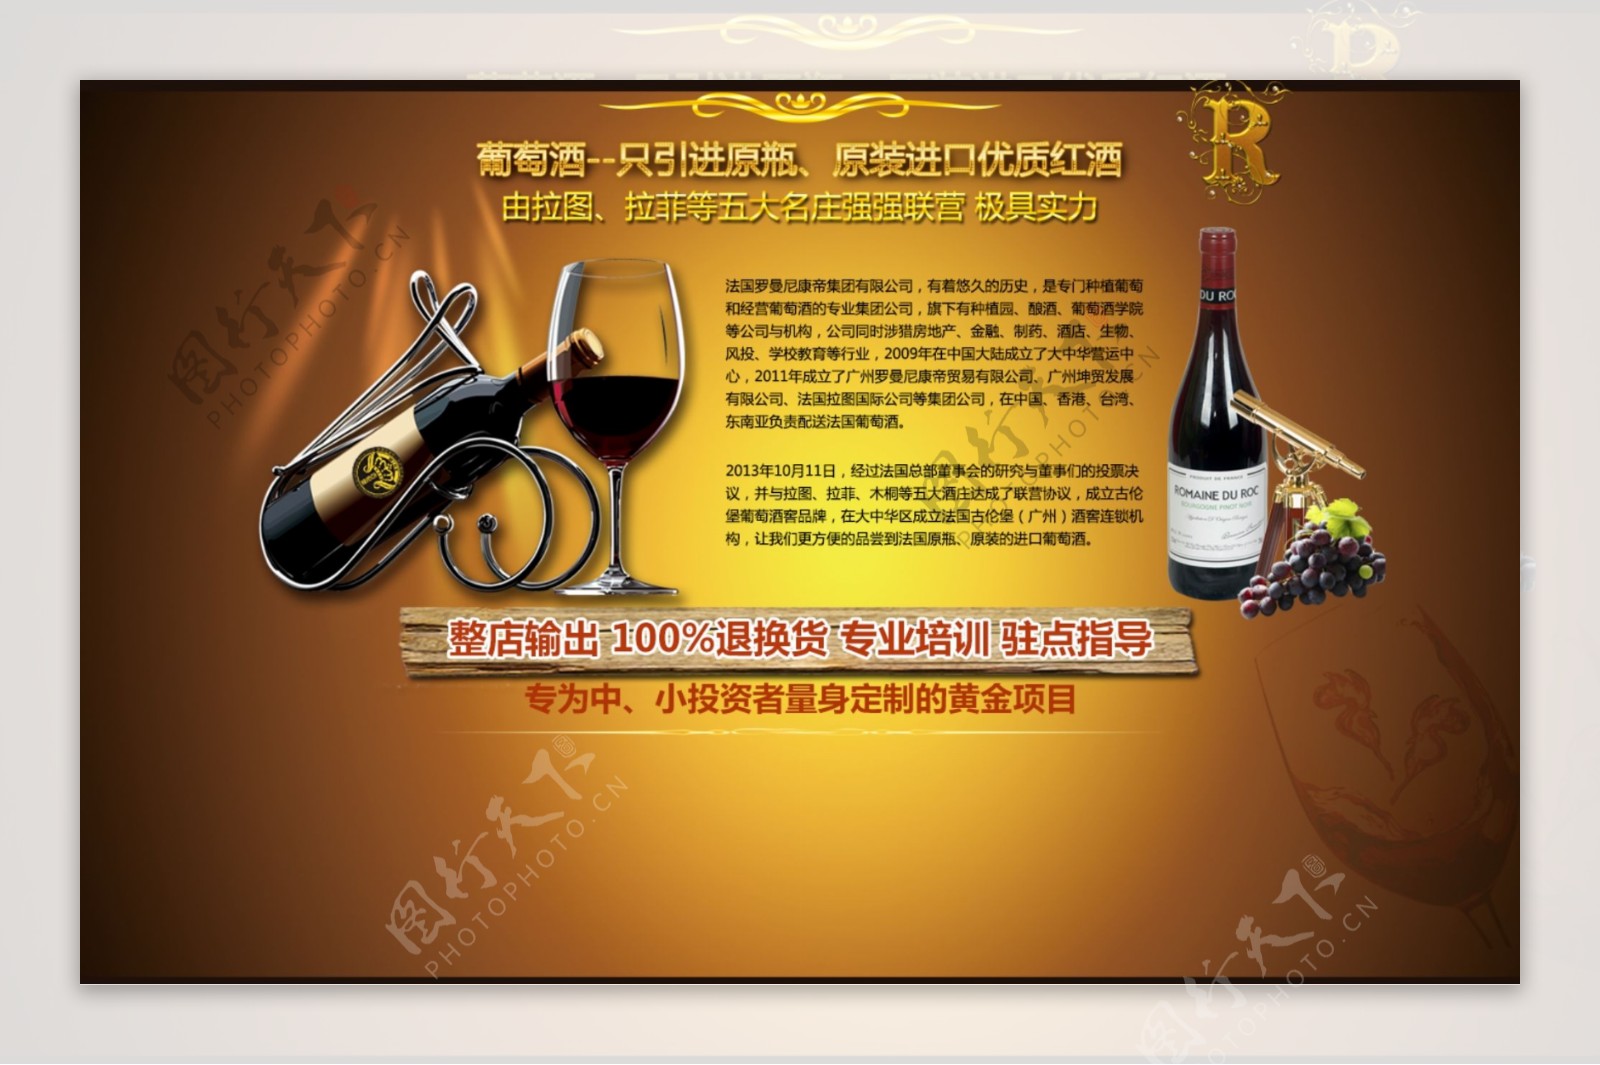 葡萄酒广告专题淘宝首页大图